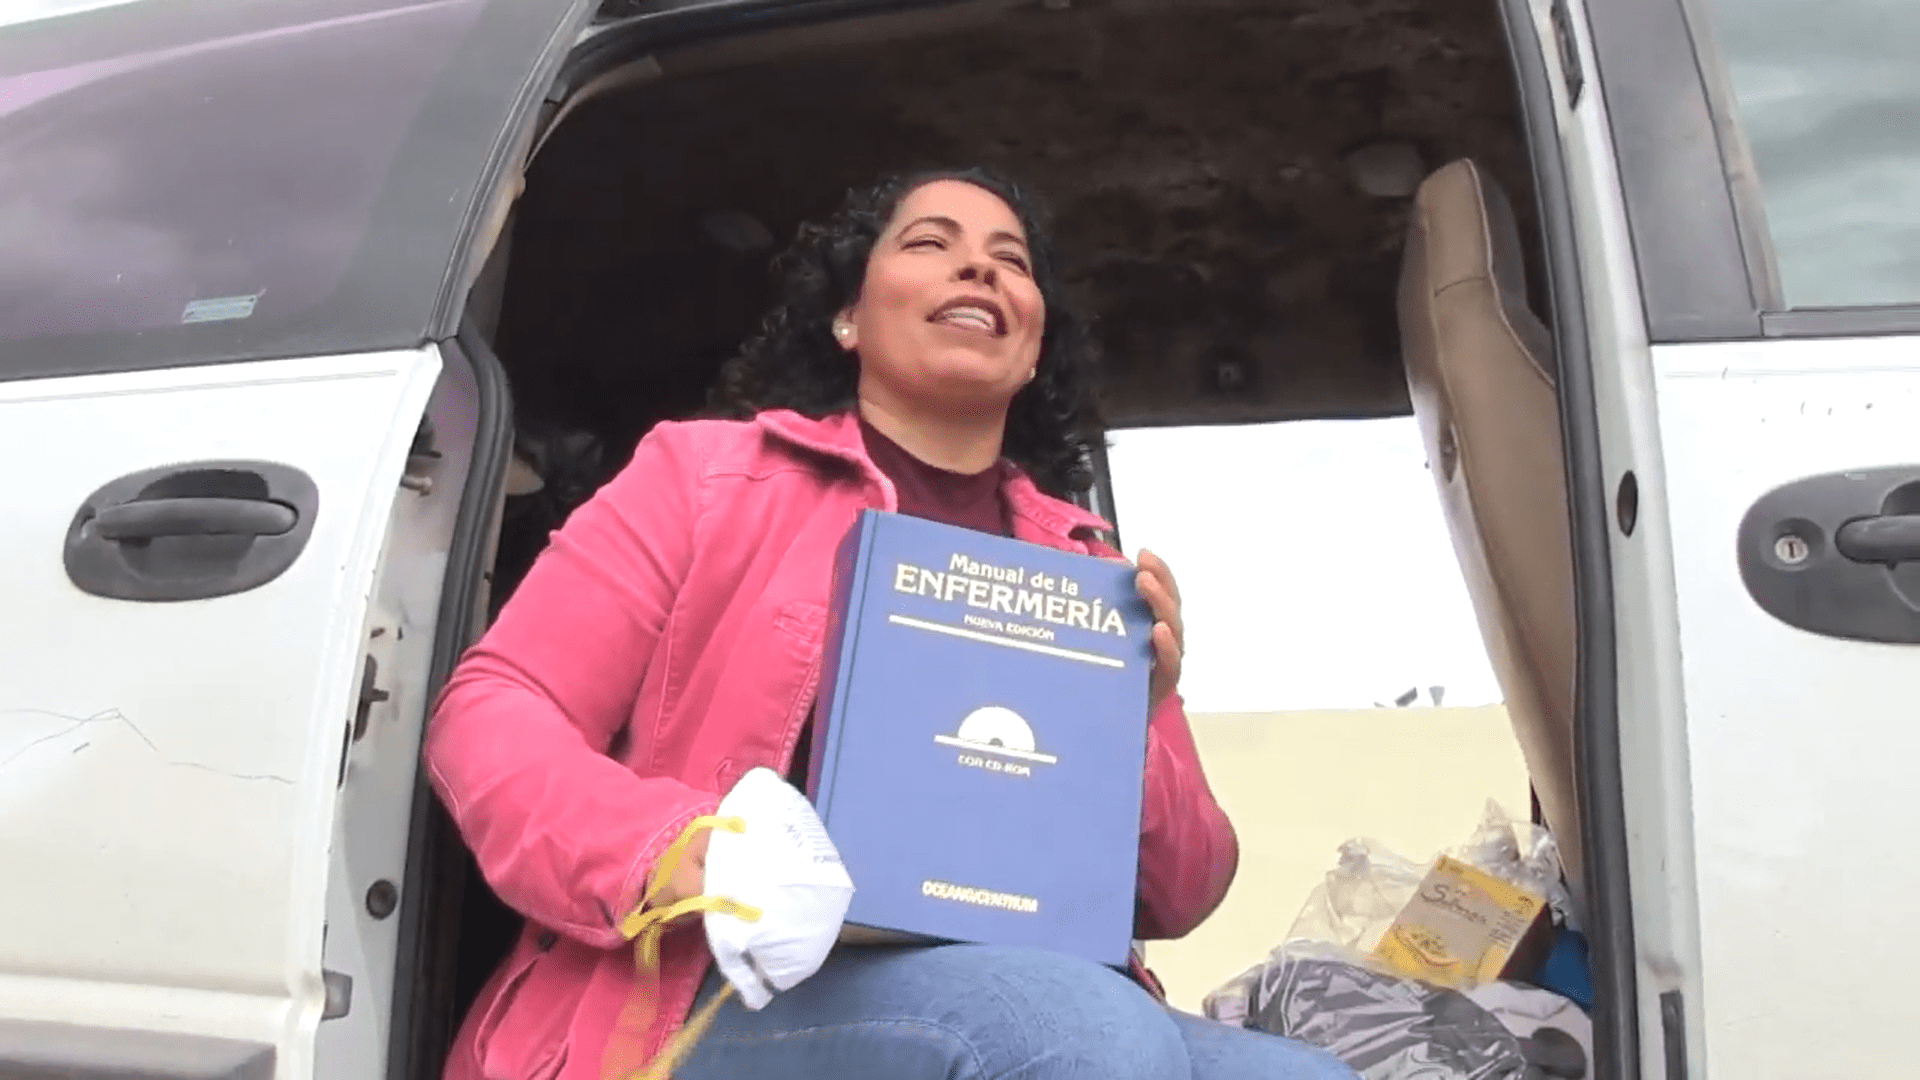 Silvia Rosas Saucedo en la camioneta en la que se aísla por el coronavirus. | Foto: Youtube/Uniradioinforma